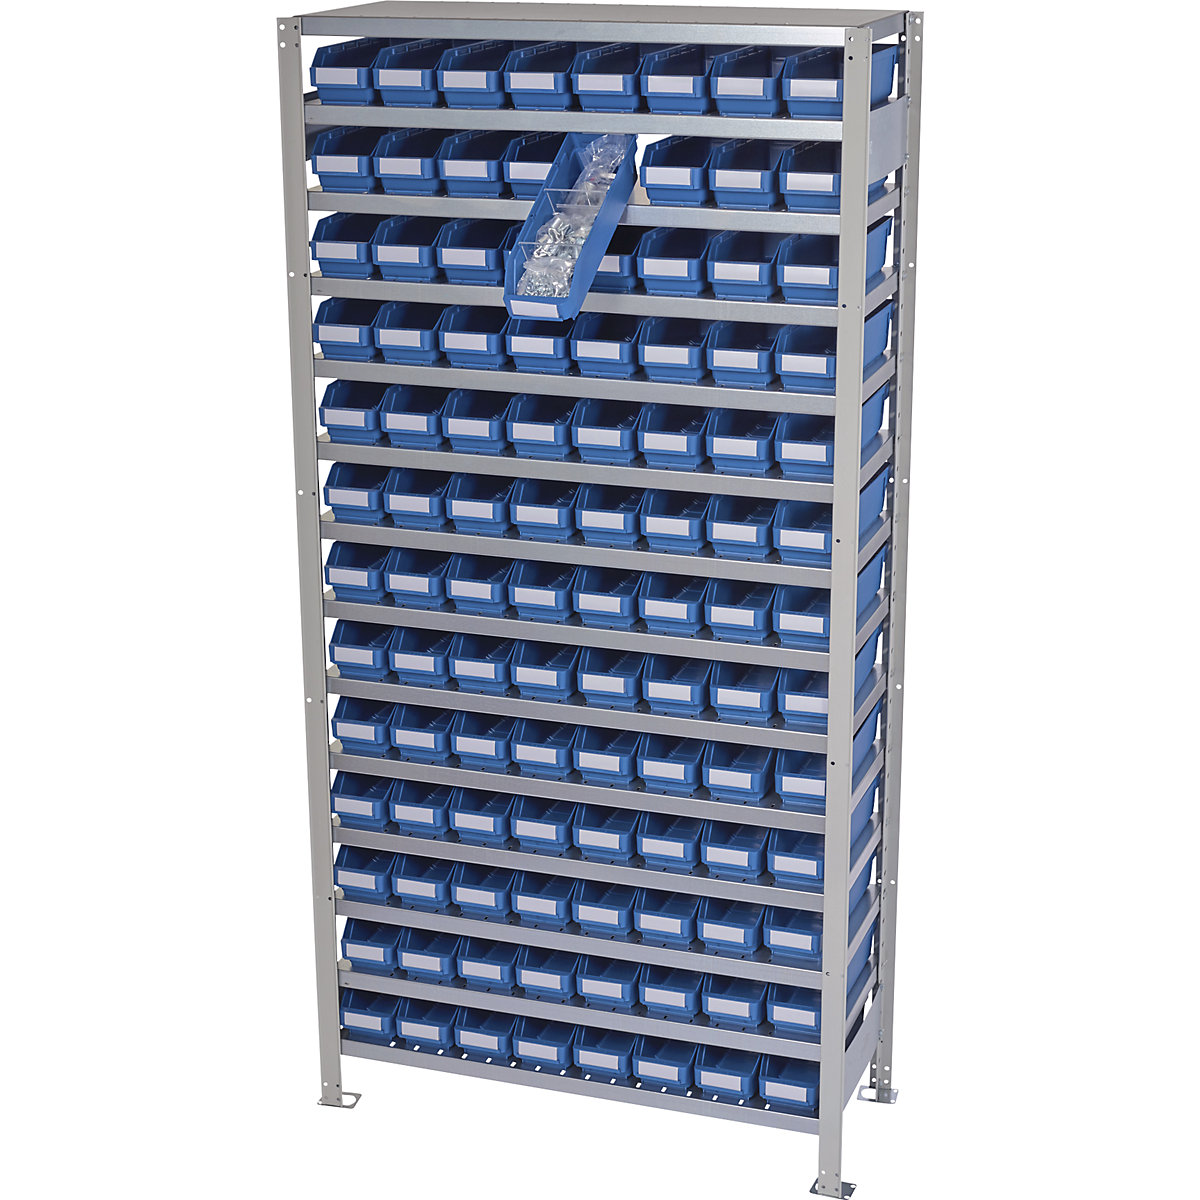 Összedugaszolós állvány dobozokkal – STEMO, állványmagasság 2100 mm, alapállvány, 400 mm mély, 104 kék doboz-19